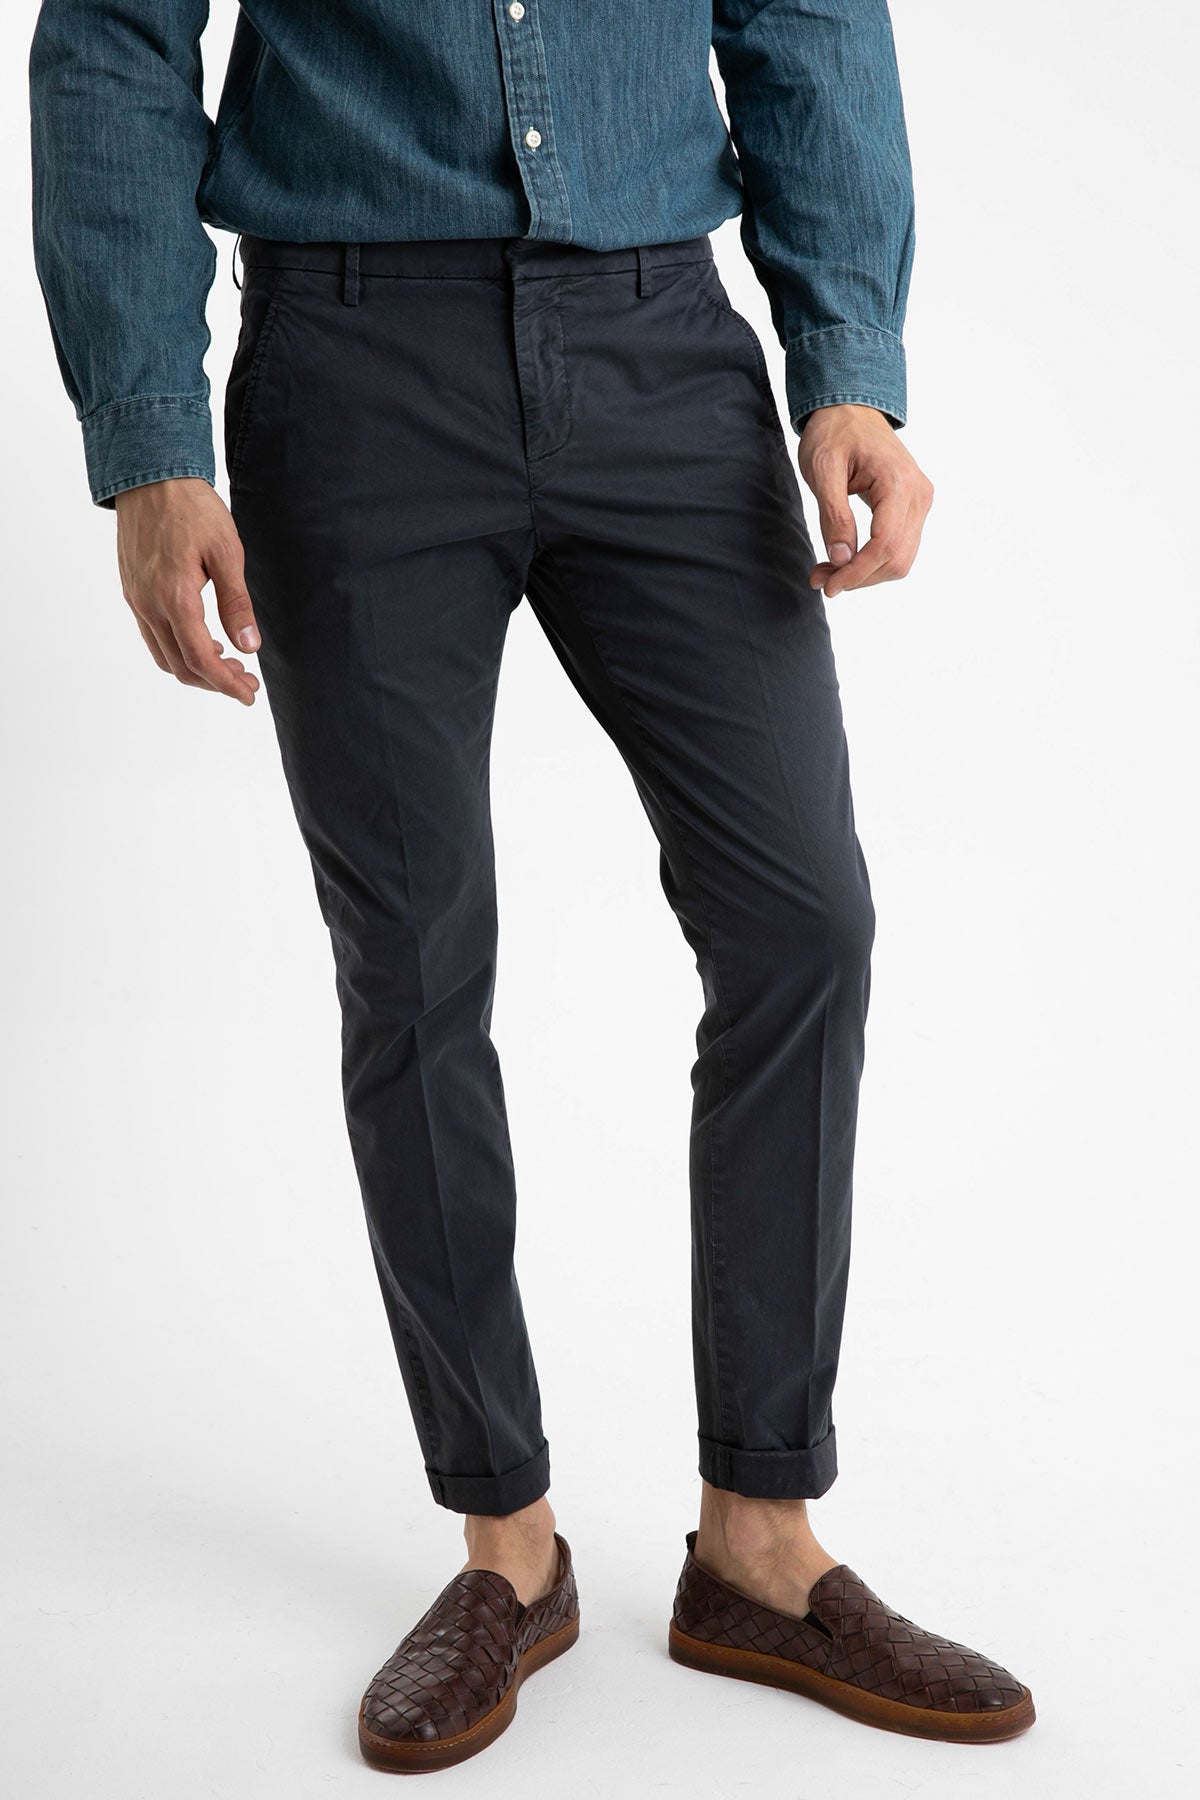 Dondup Yandan Cepli Skinny Fit Pantolon-Libas Trendy Fashion Store